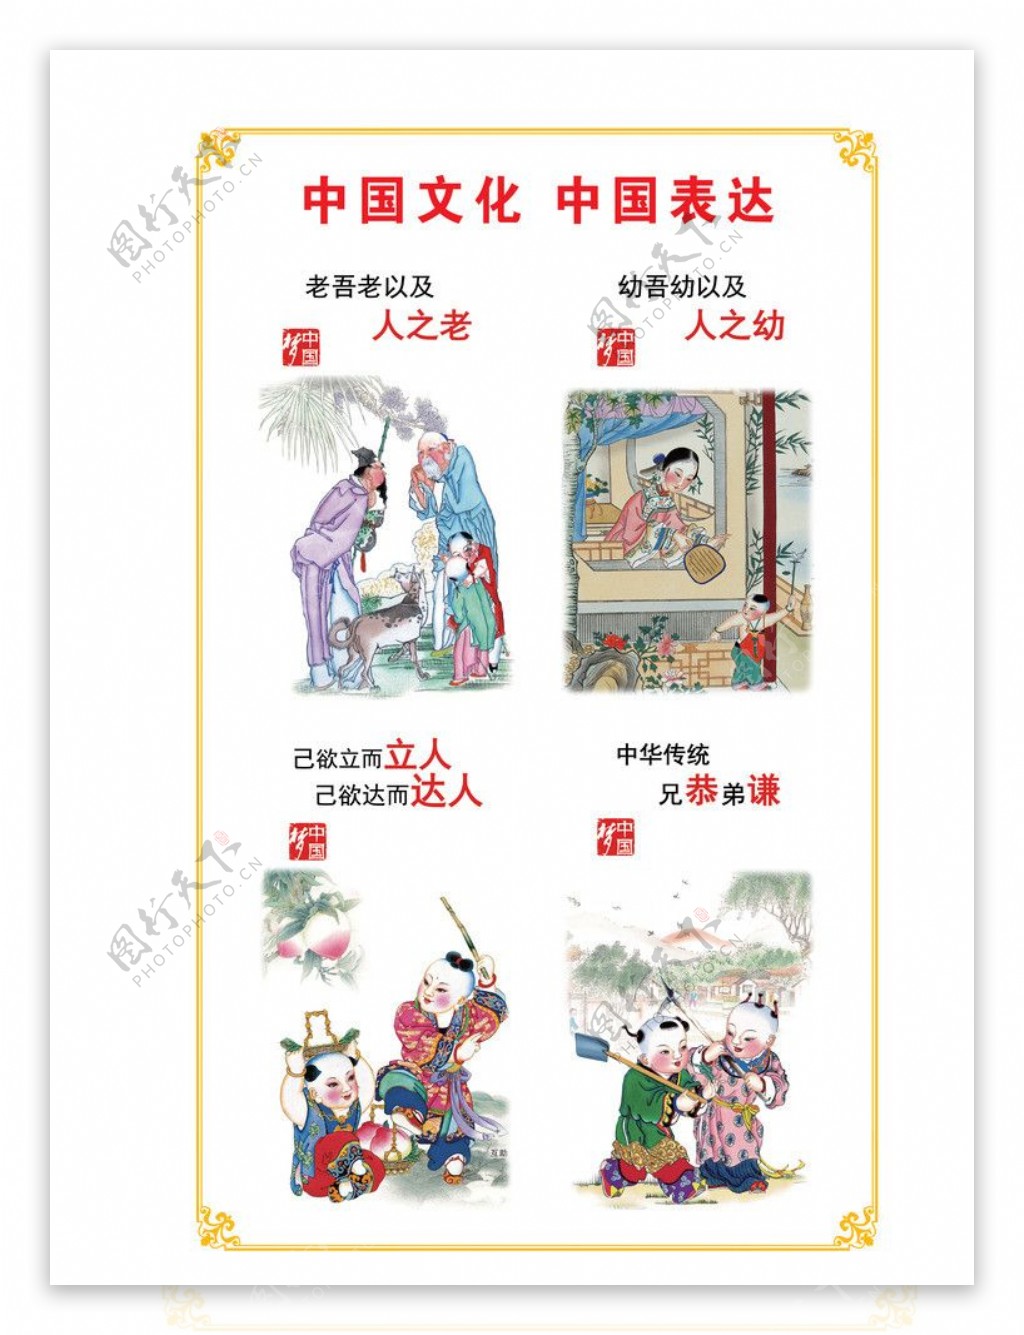 中国梦文化宣传广告图片